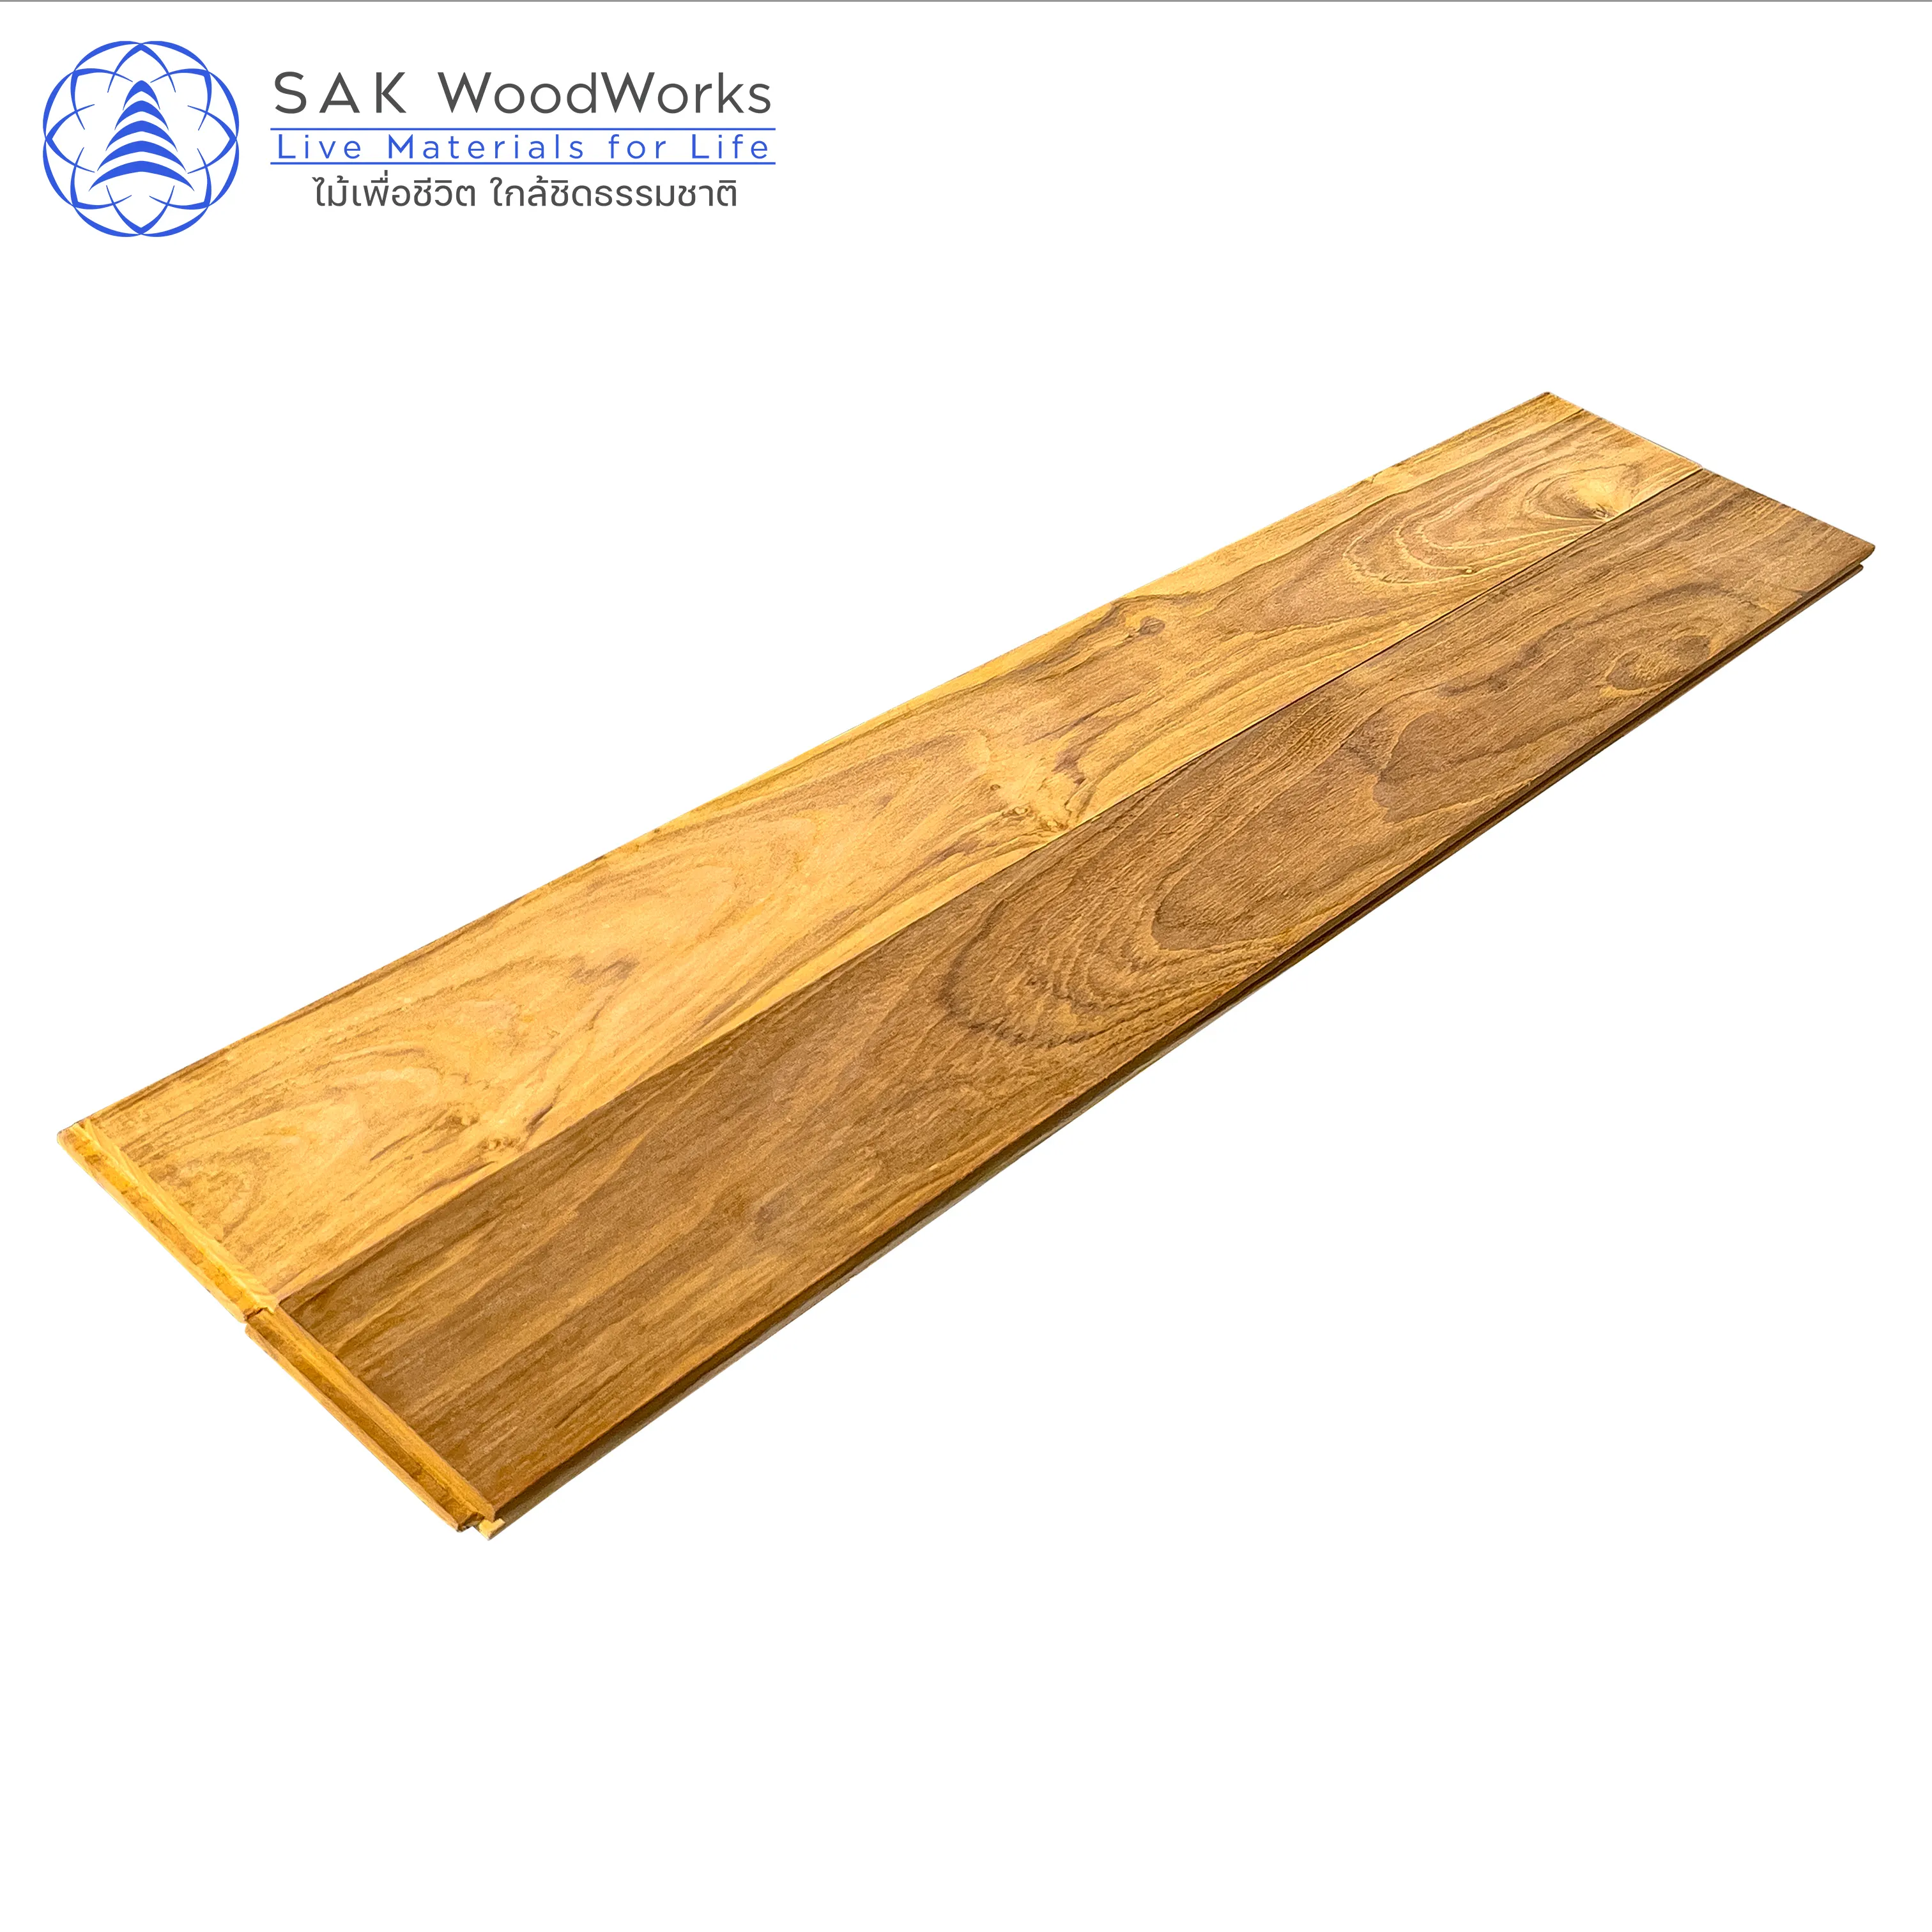 Thai Teak Parquet Boards by SAK WoodWorks 15 x 90 x 600 mm. Luxurious Golden Teak Parquet Flooring with FSC Certified